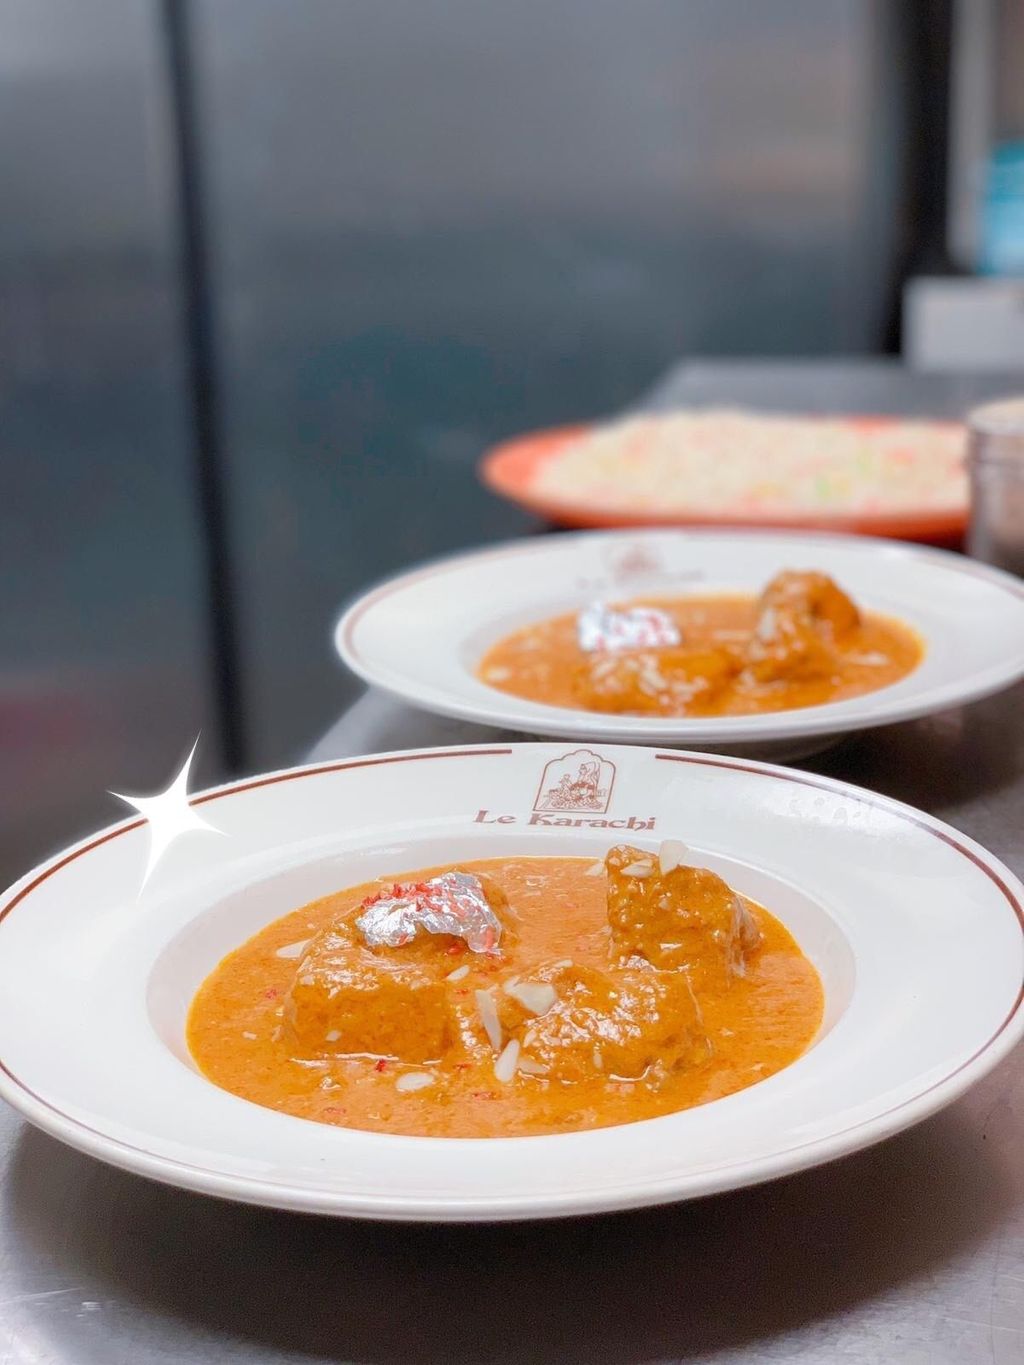 Restaurant Le Karachi Lyon - Dish Food Cuisine Ingredient Curry